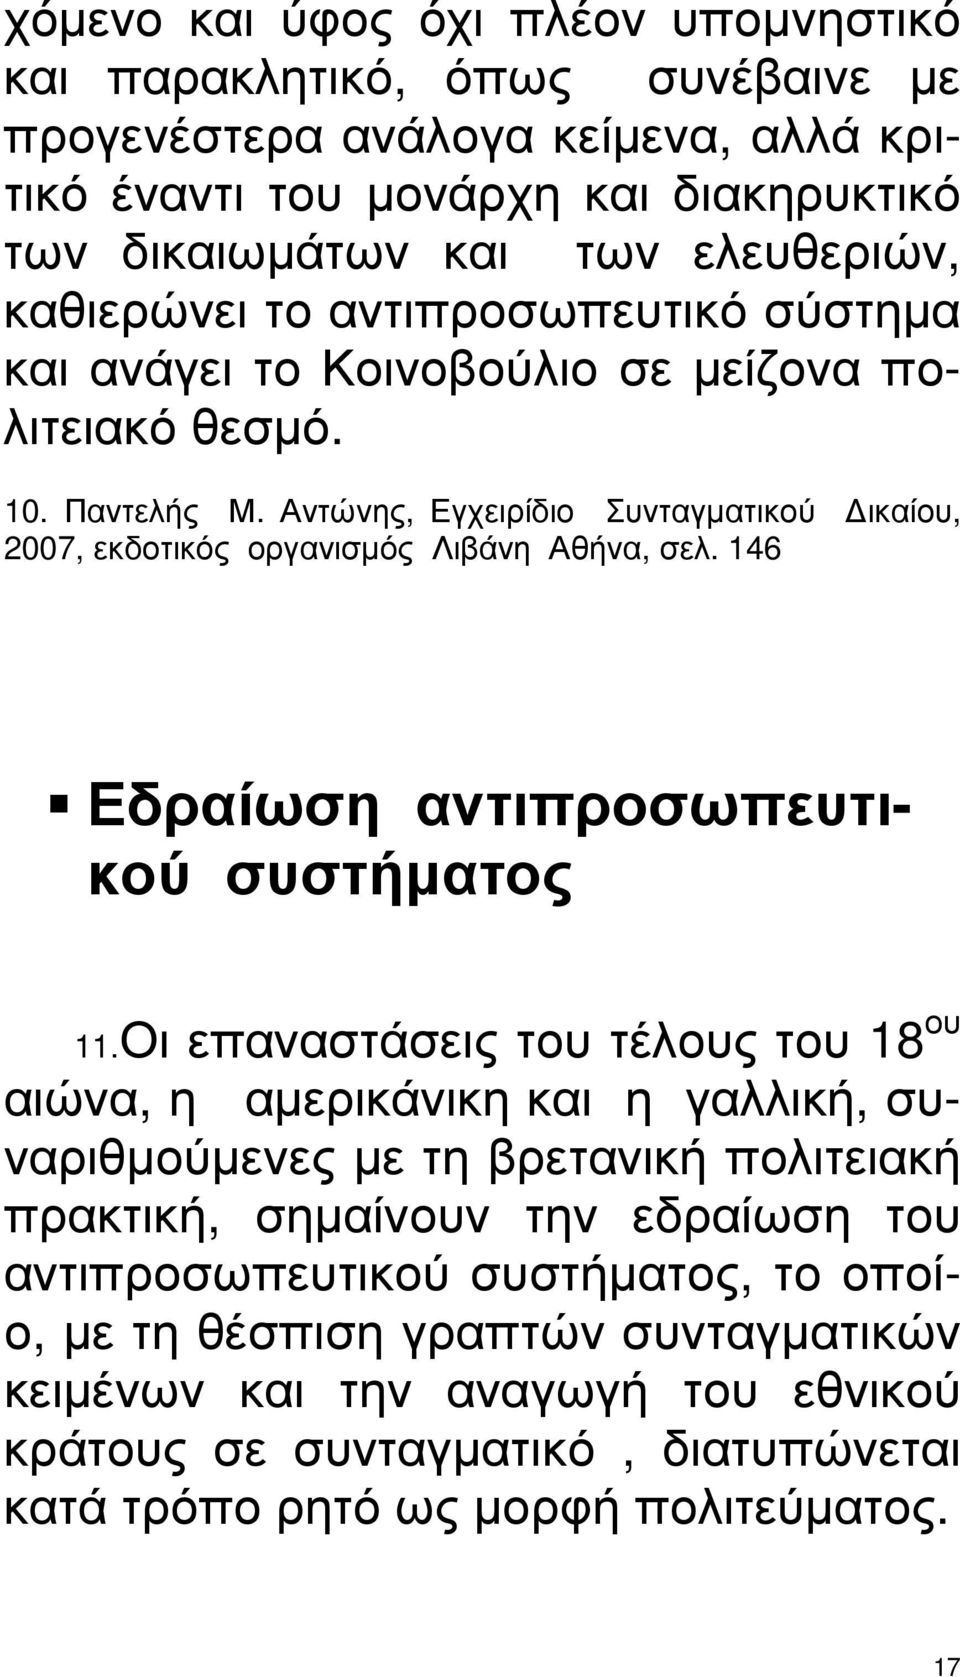 Αντώνης, Εγχειρίδιο Συνταγµατικού ικαίου, 2007, εκδοτικός οργανισµός Λιβάνη Αθήνα, σελ. 146 Εδραίωση αντιπροσωπευτικού συστήµατος 11.